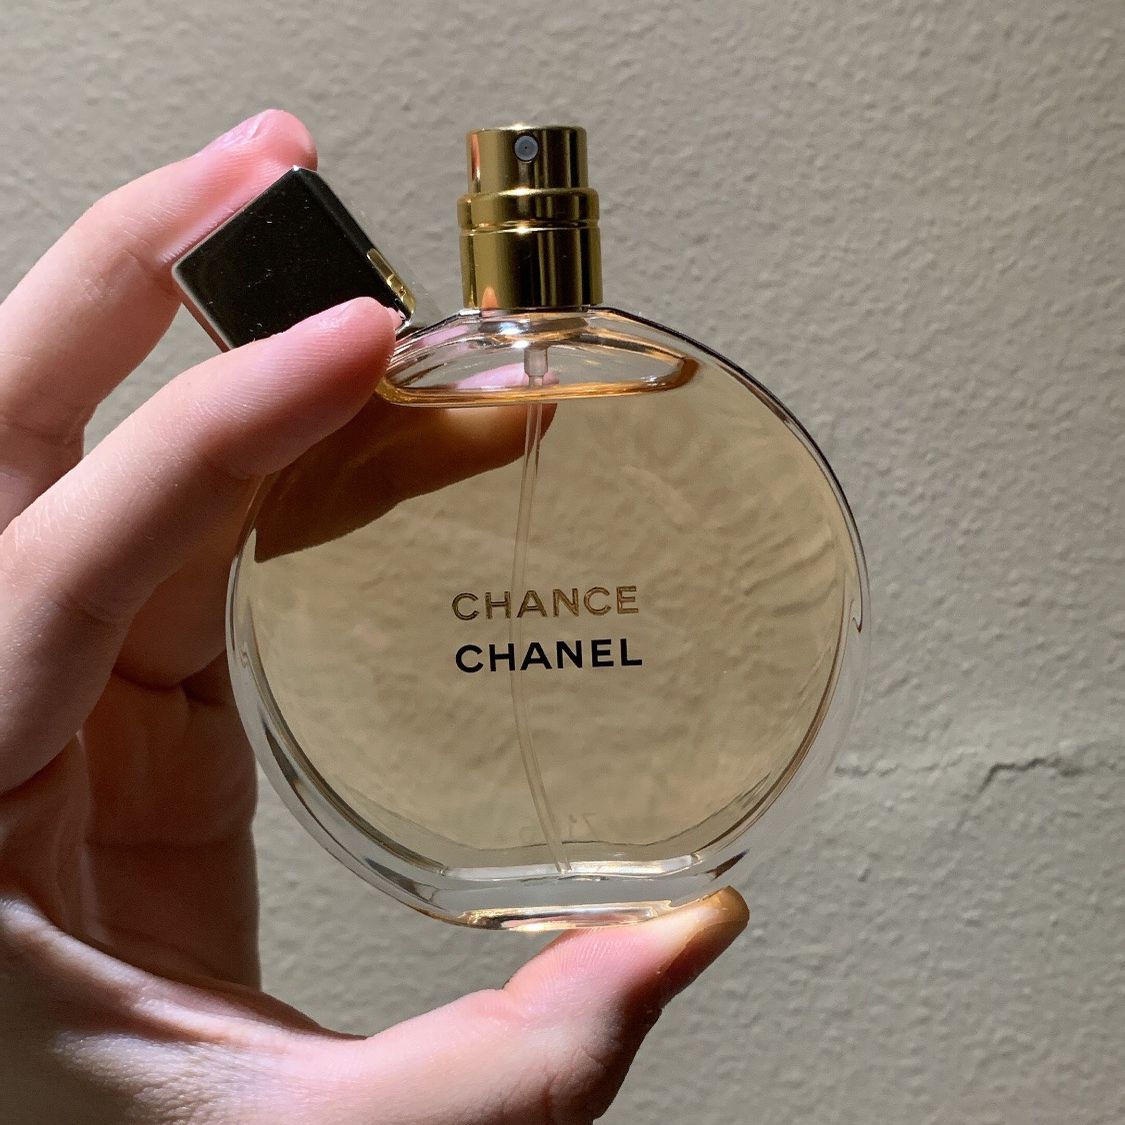 CHANEL Chance Eau Tendre 3.4 Fl. Oz. Eau De Parfum for sale online